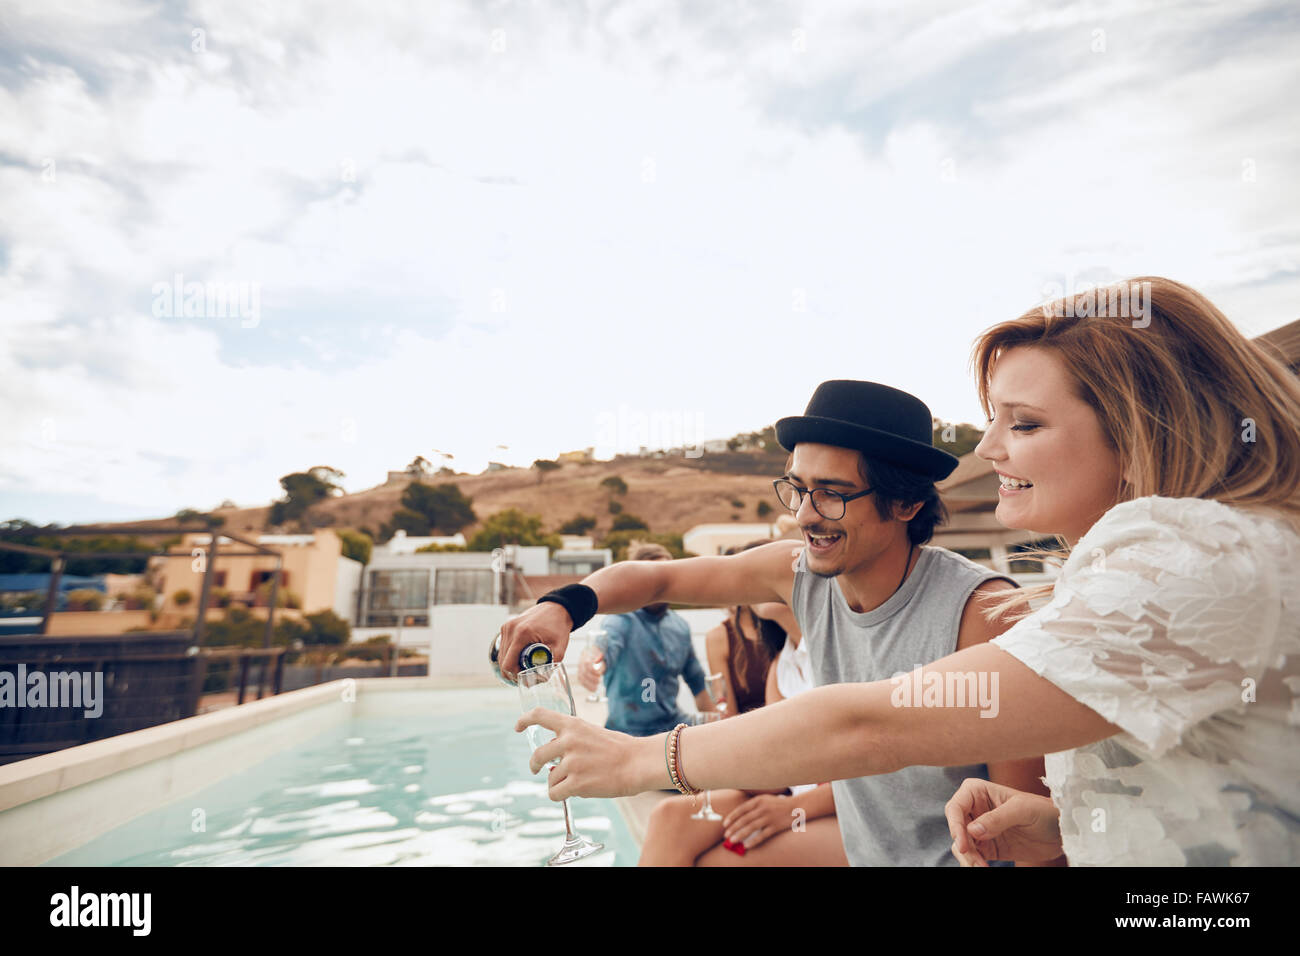 Junger Mann gießt Champagner im Glas von seiner Freundin während der Party am Pool. Junge Menschen, die Spaß am Dach p Stockfoto